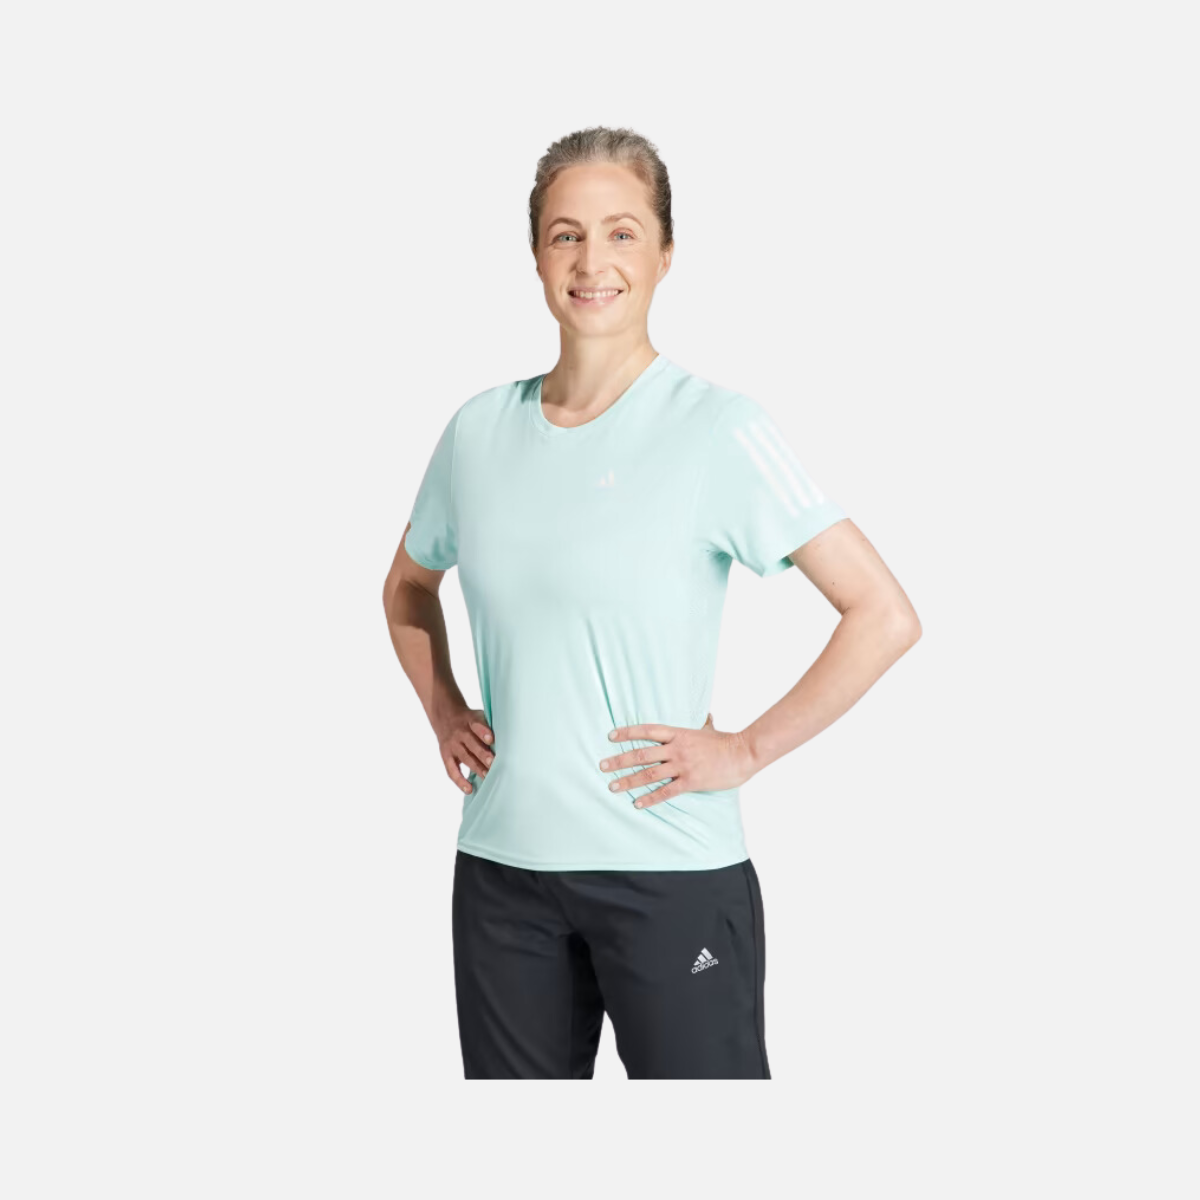 Adidas Own The Run Women's Running T-shirt -Semi Flash Aqua